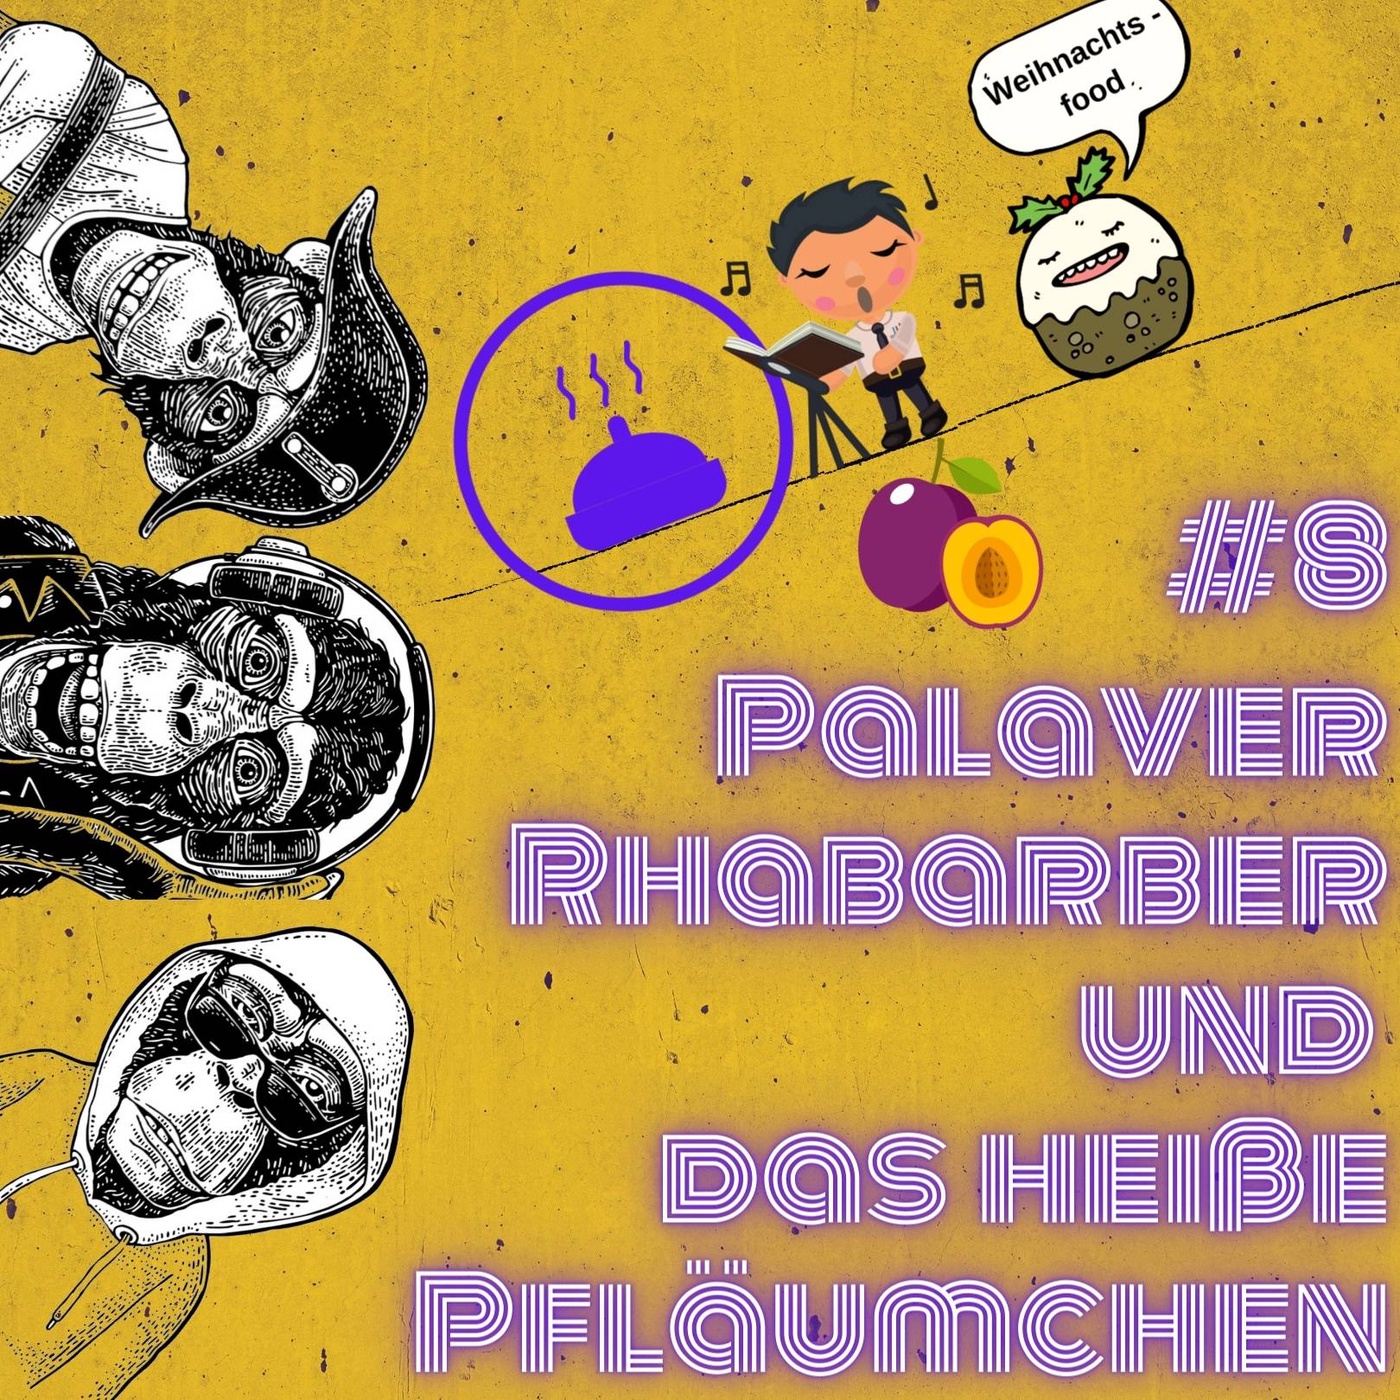 #8 Palaver Rhabarber und das heiße Pfläumchen